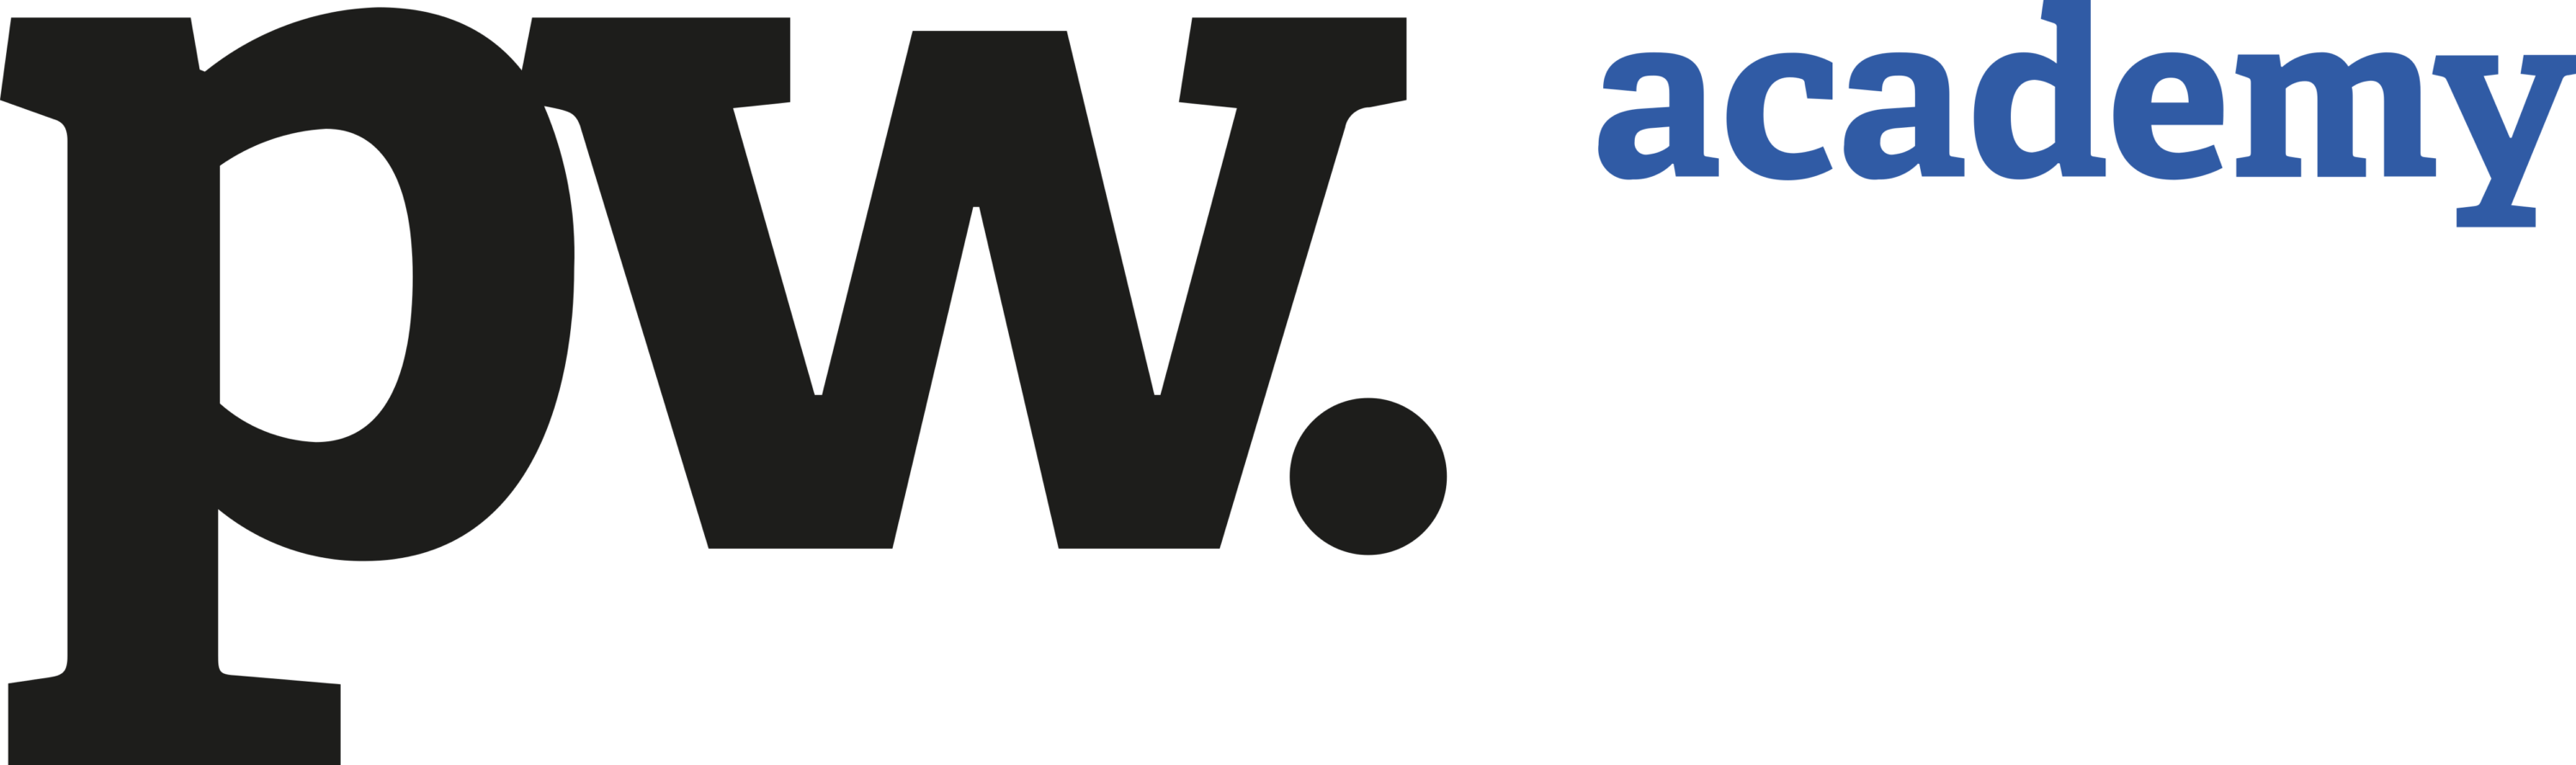 PW Academy Logo